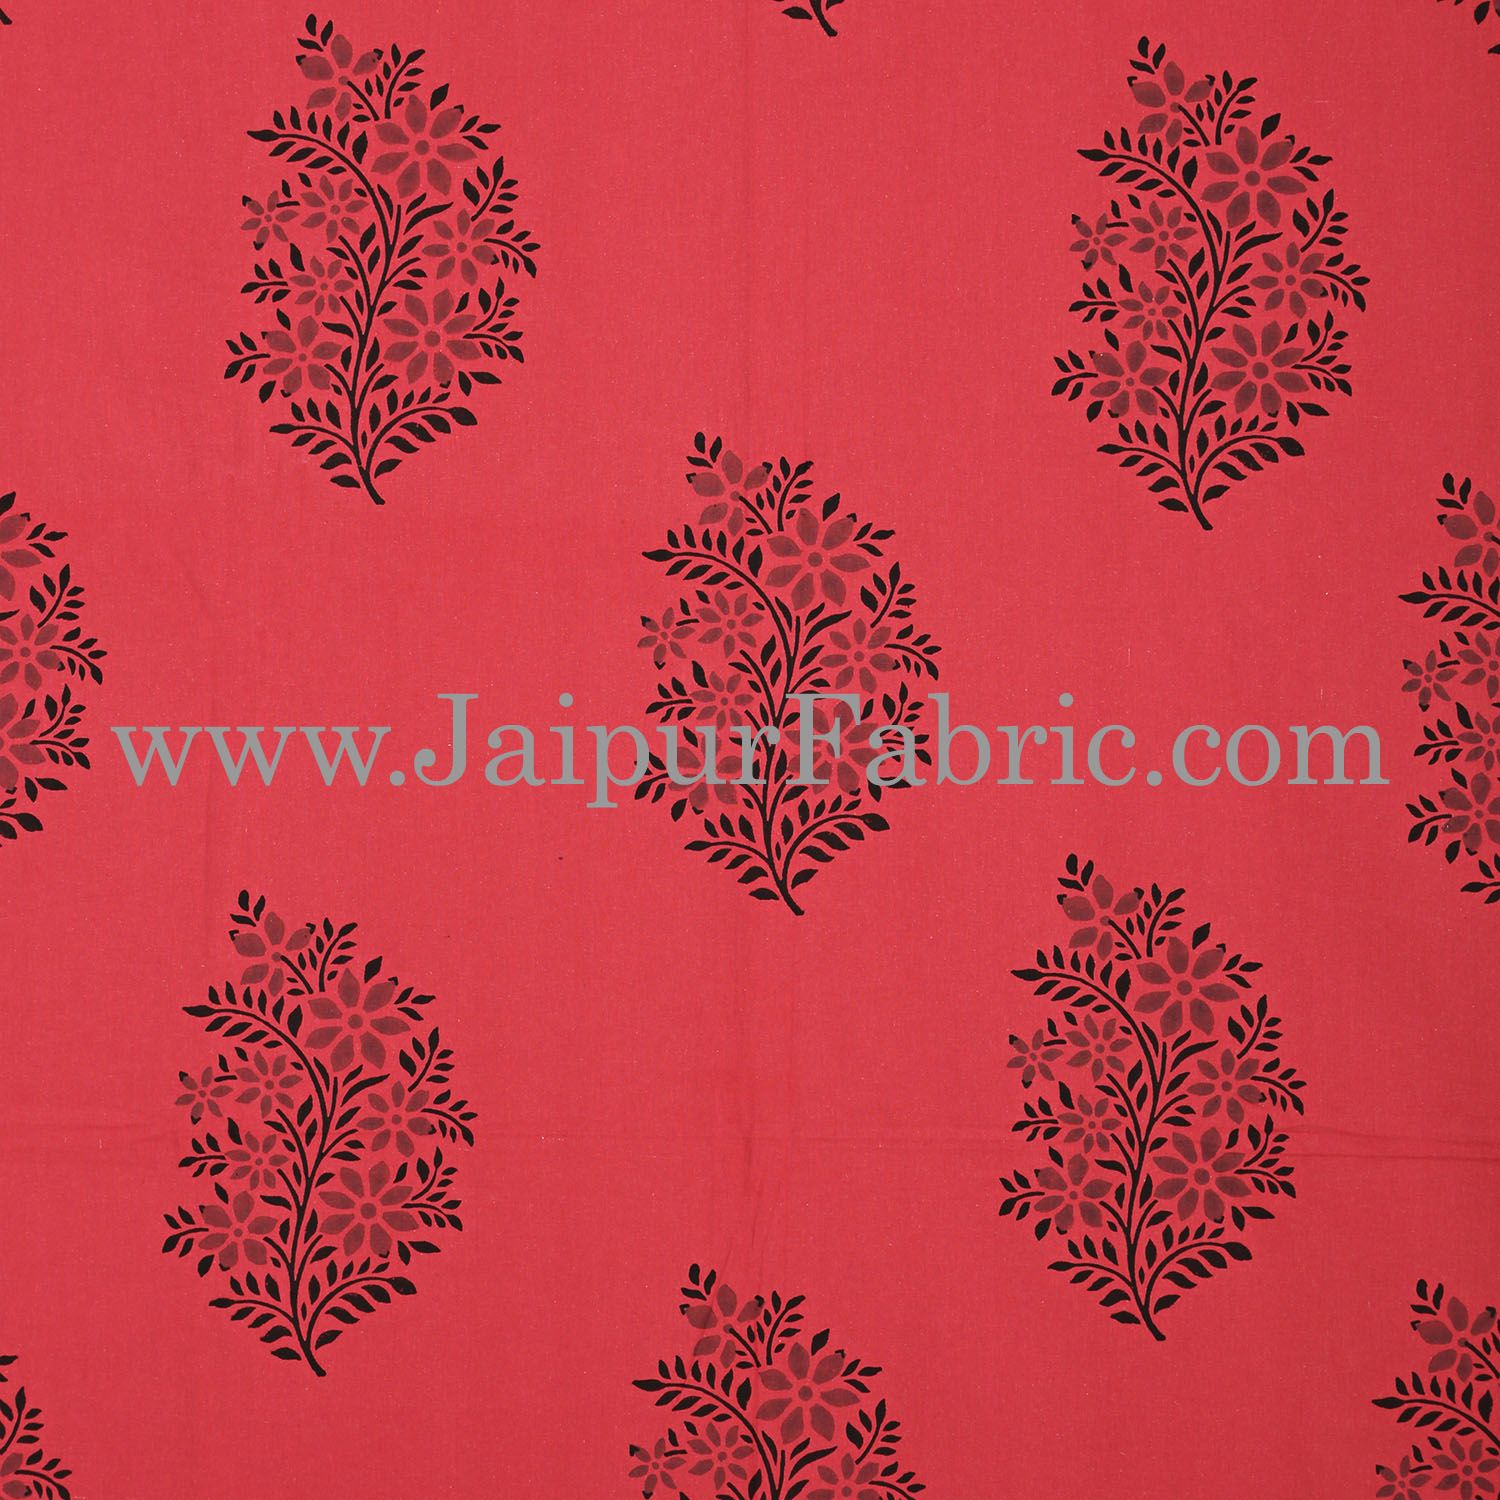 Brick Colour With Black Floral Pattern Hand Block Print Super Fine Cotton Double Bedsheet